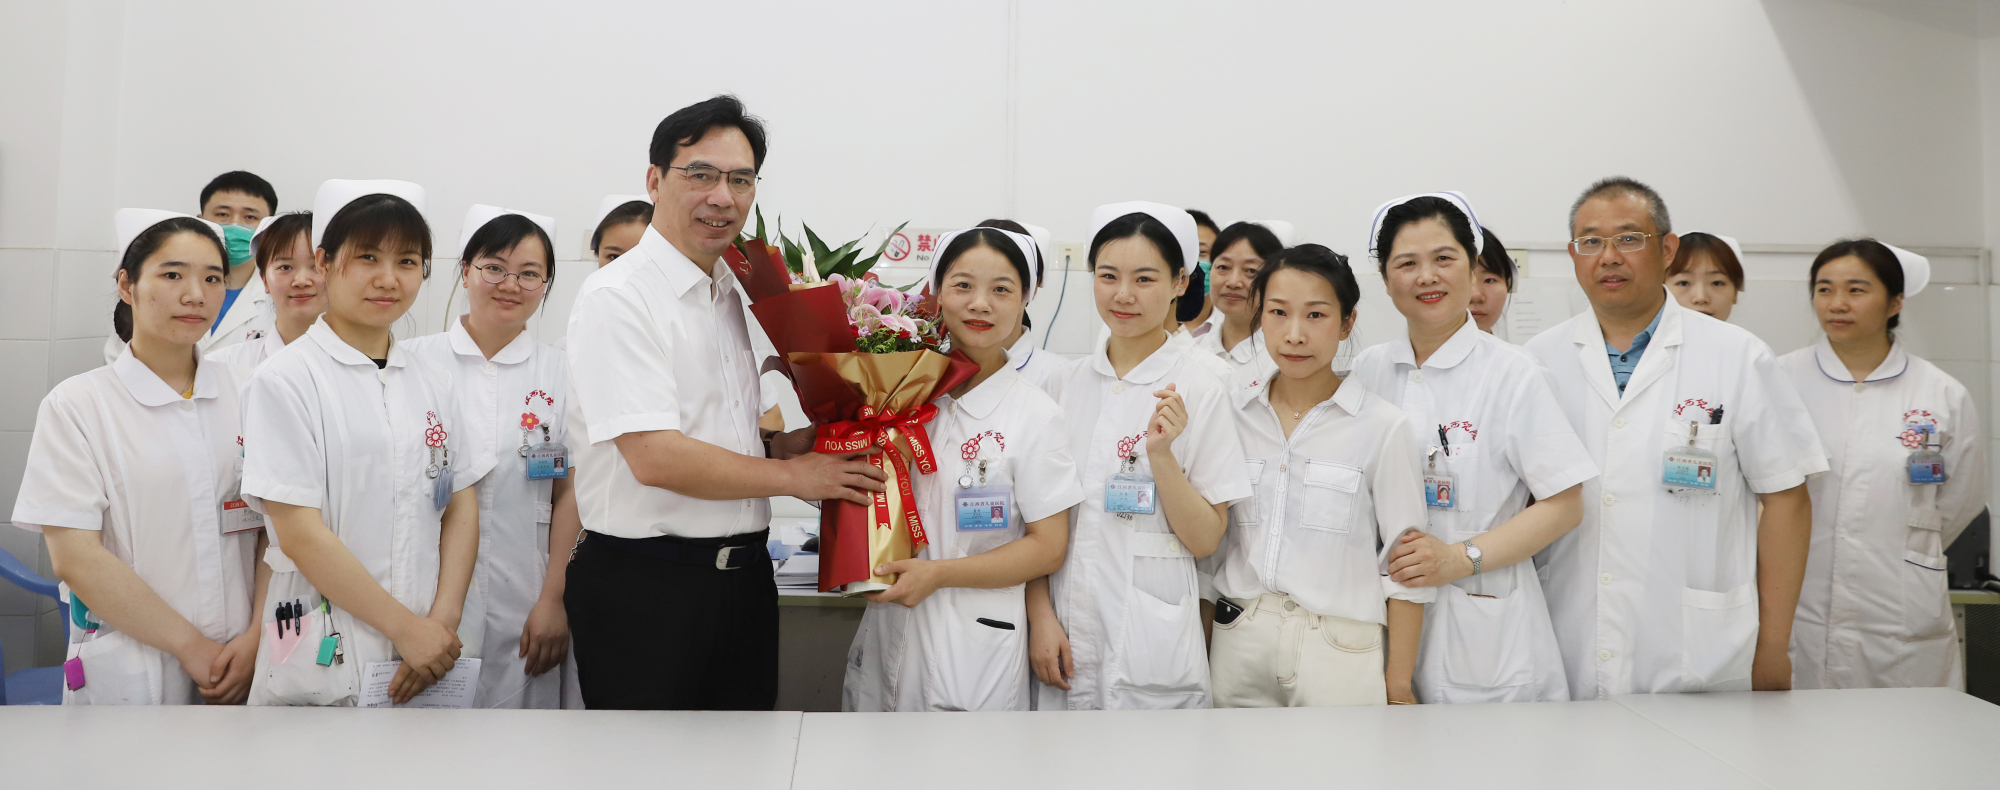 江西省儿童医院为全院护士送上节日的问候与祝福